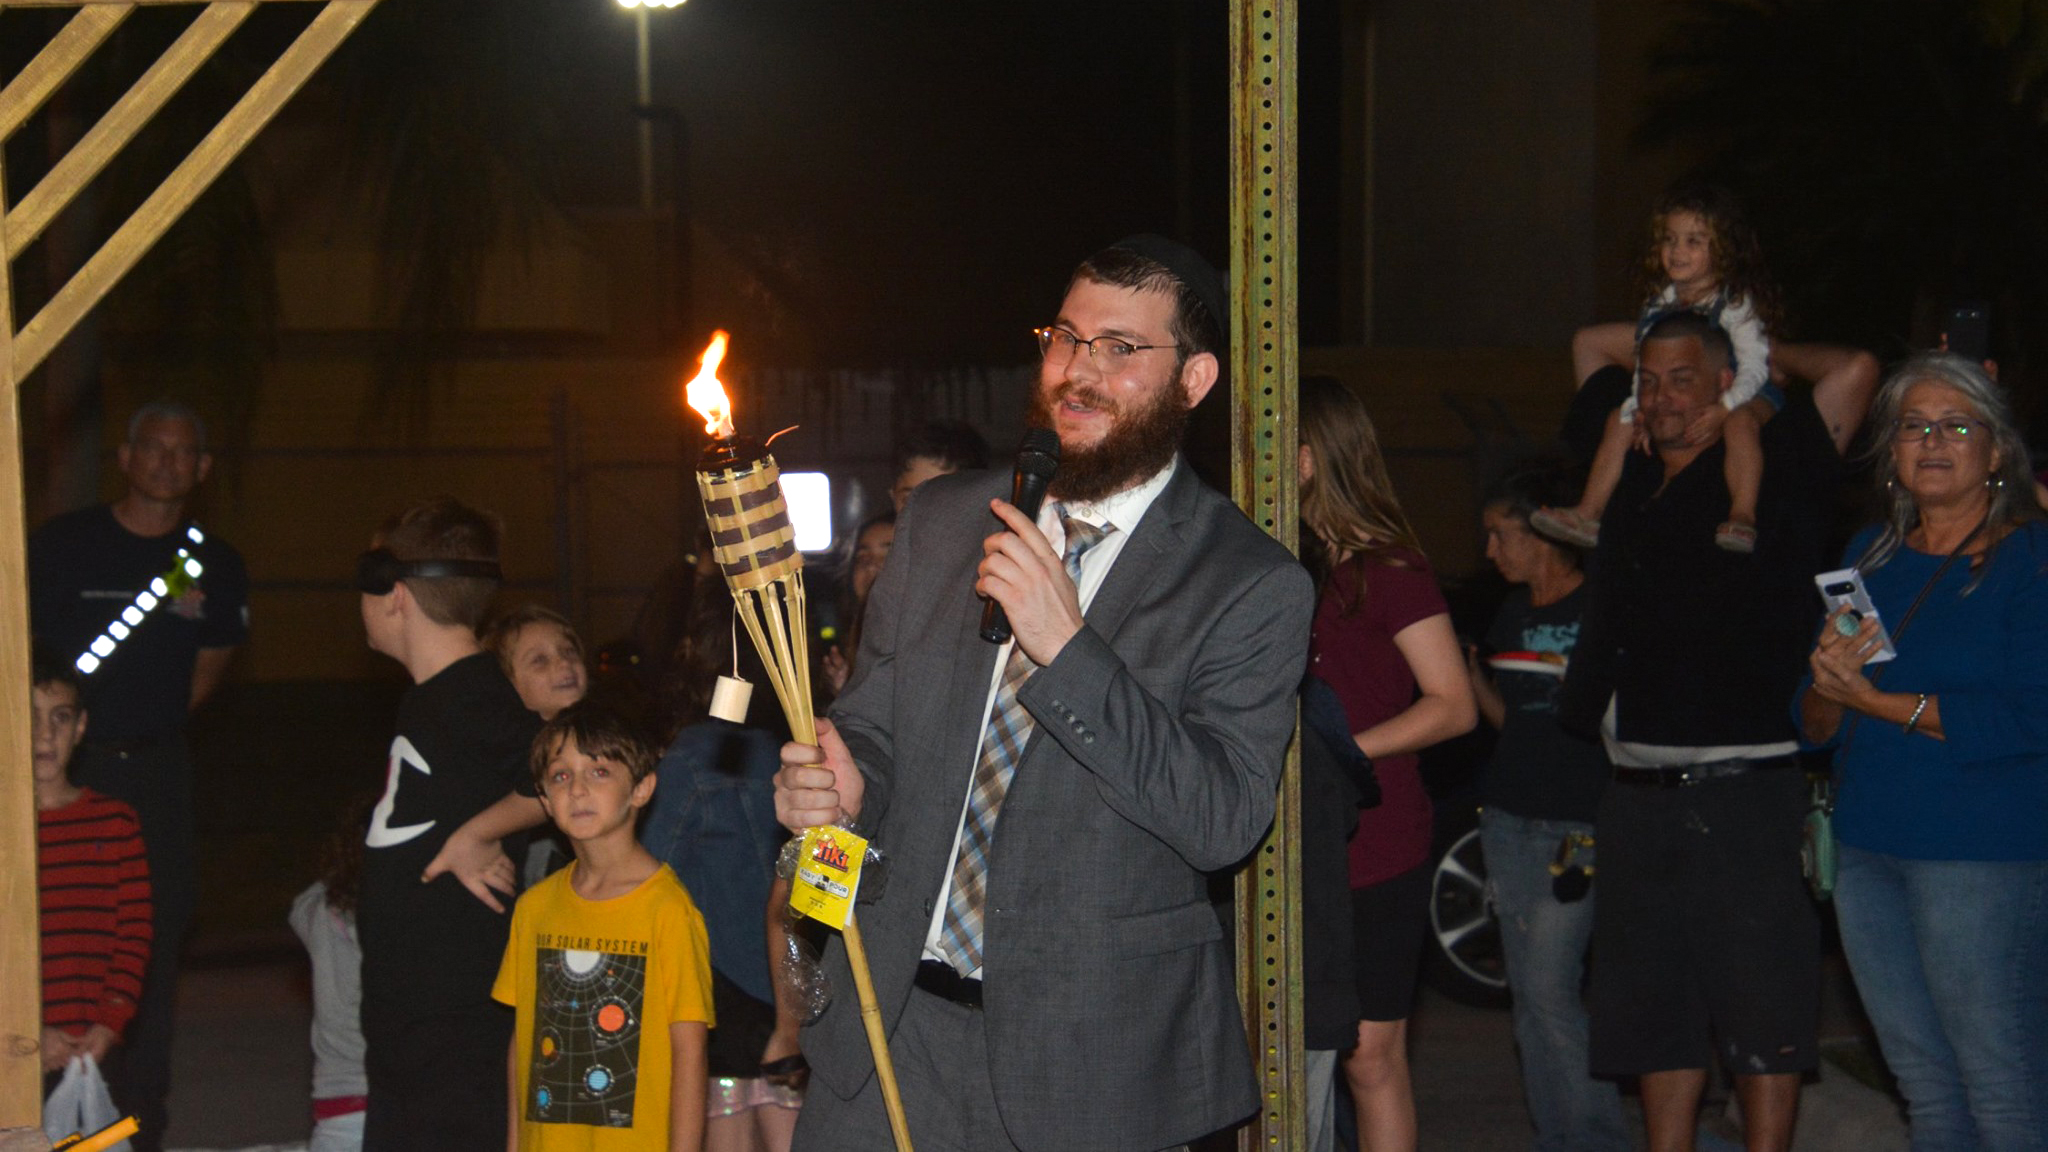 Chabad Jewish Center of Tamarac Holds Festive Chanukah Celebration